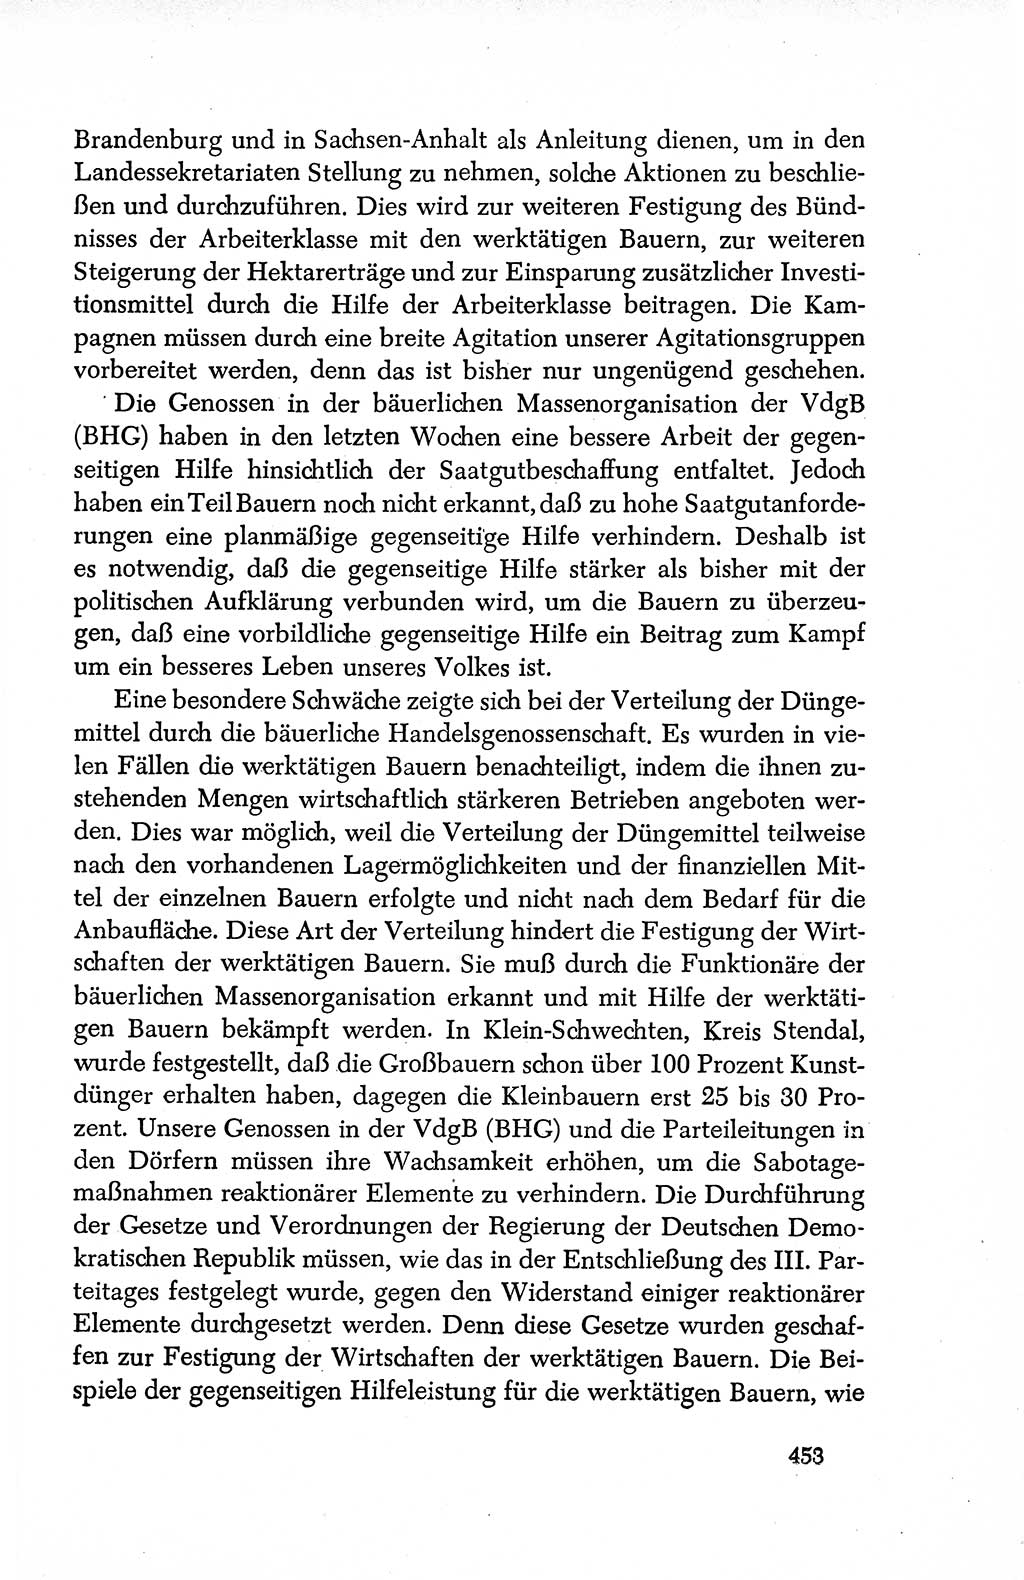 Dokumente der Sozialistischen Einheitspartei Deutschlands (SED) [Deutsche Demokratische Republik (DDR)] 1950-1952, Seite 453 (Dok. SED DDR 1950-1952, S. 453)